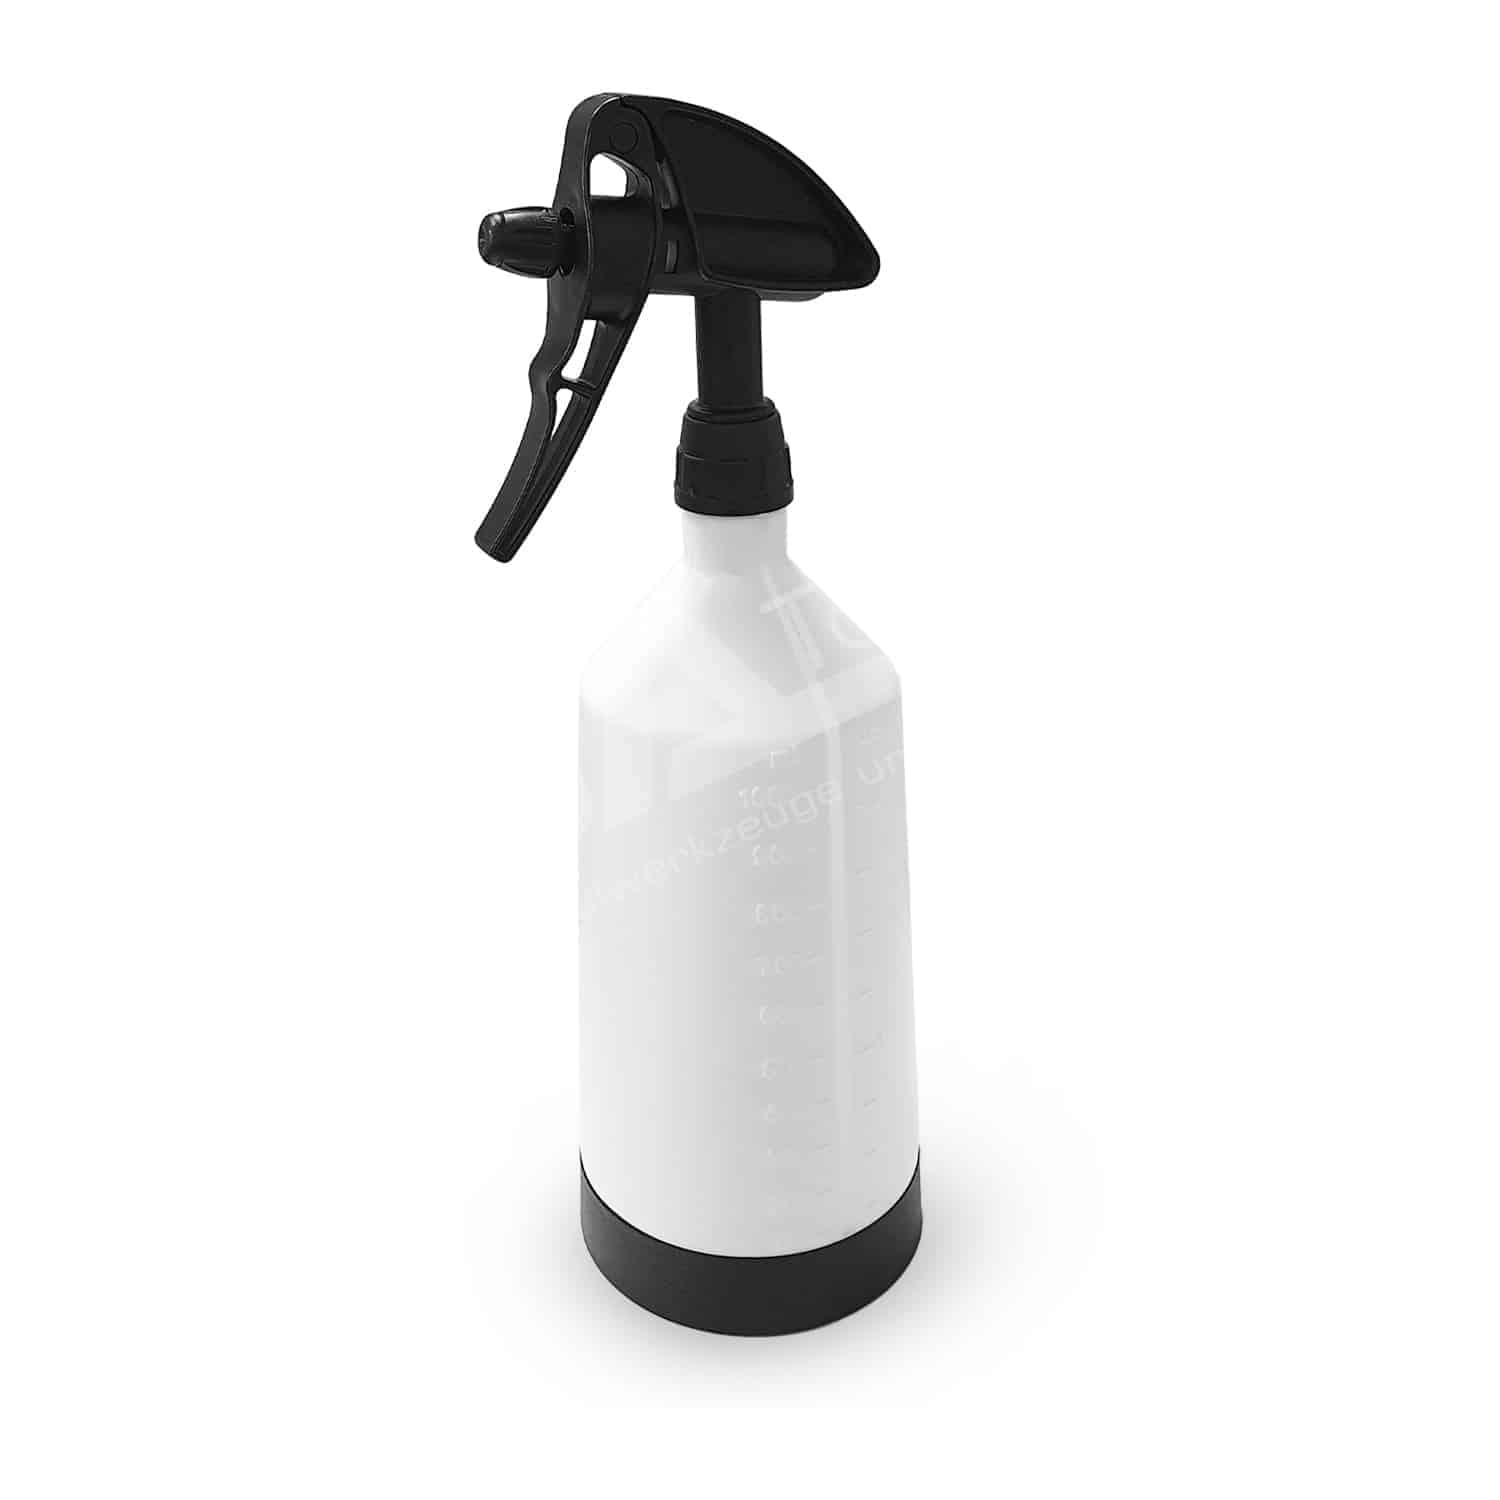 HDPE Sprühflasche 1000 ml mit Messskala und Doppelhub Sprühsystem, verstellbare Düse, Profi-Sprühflasche